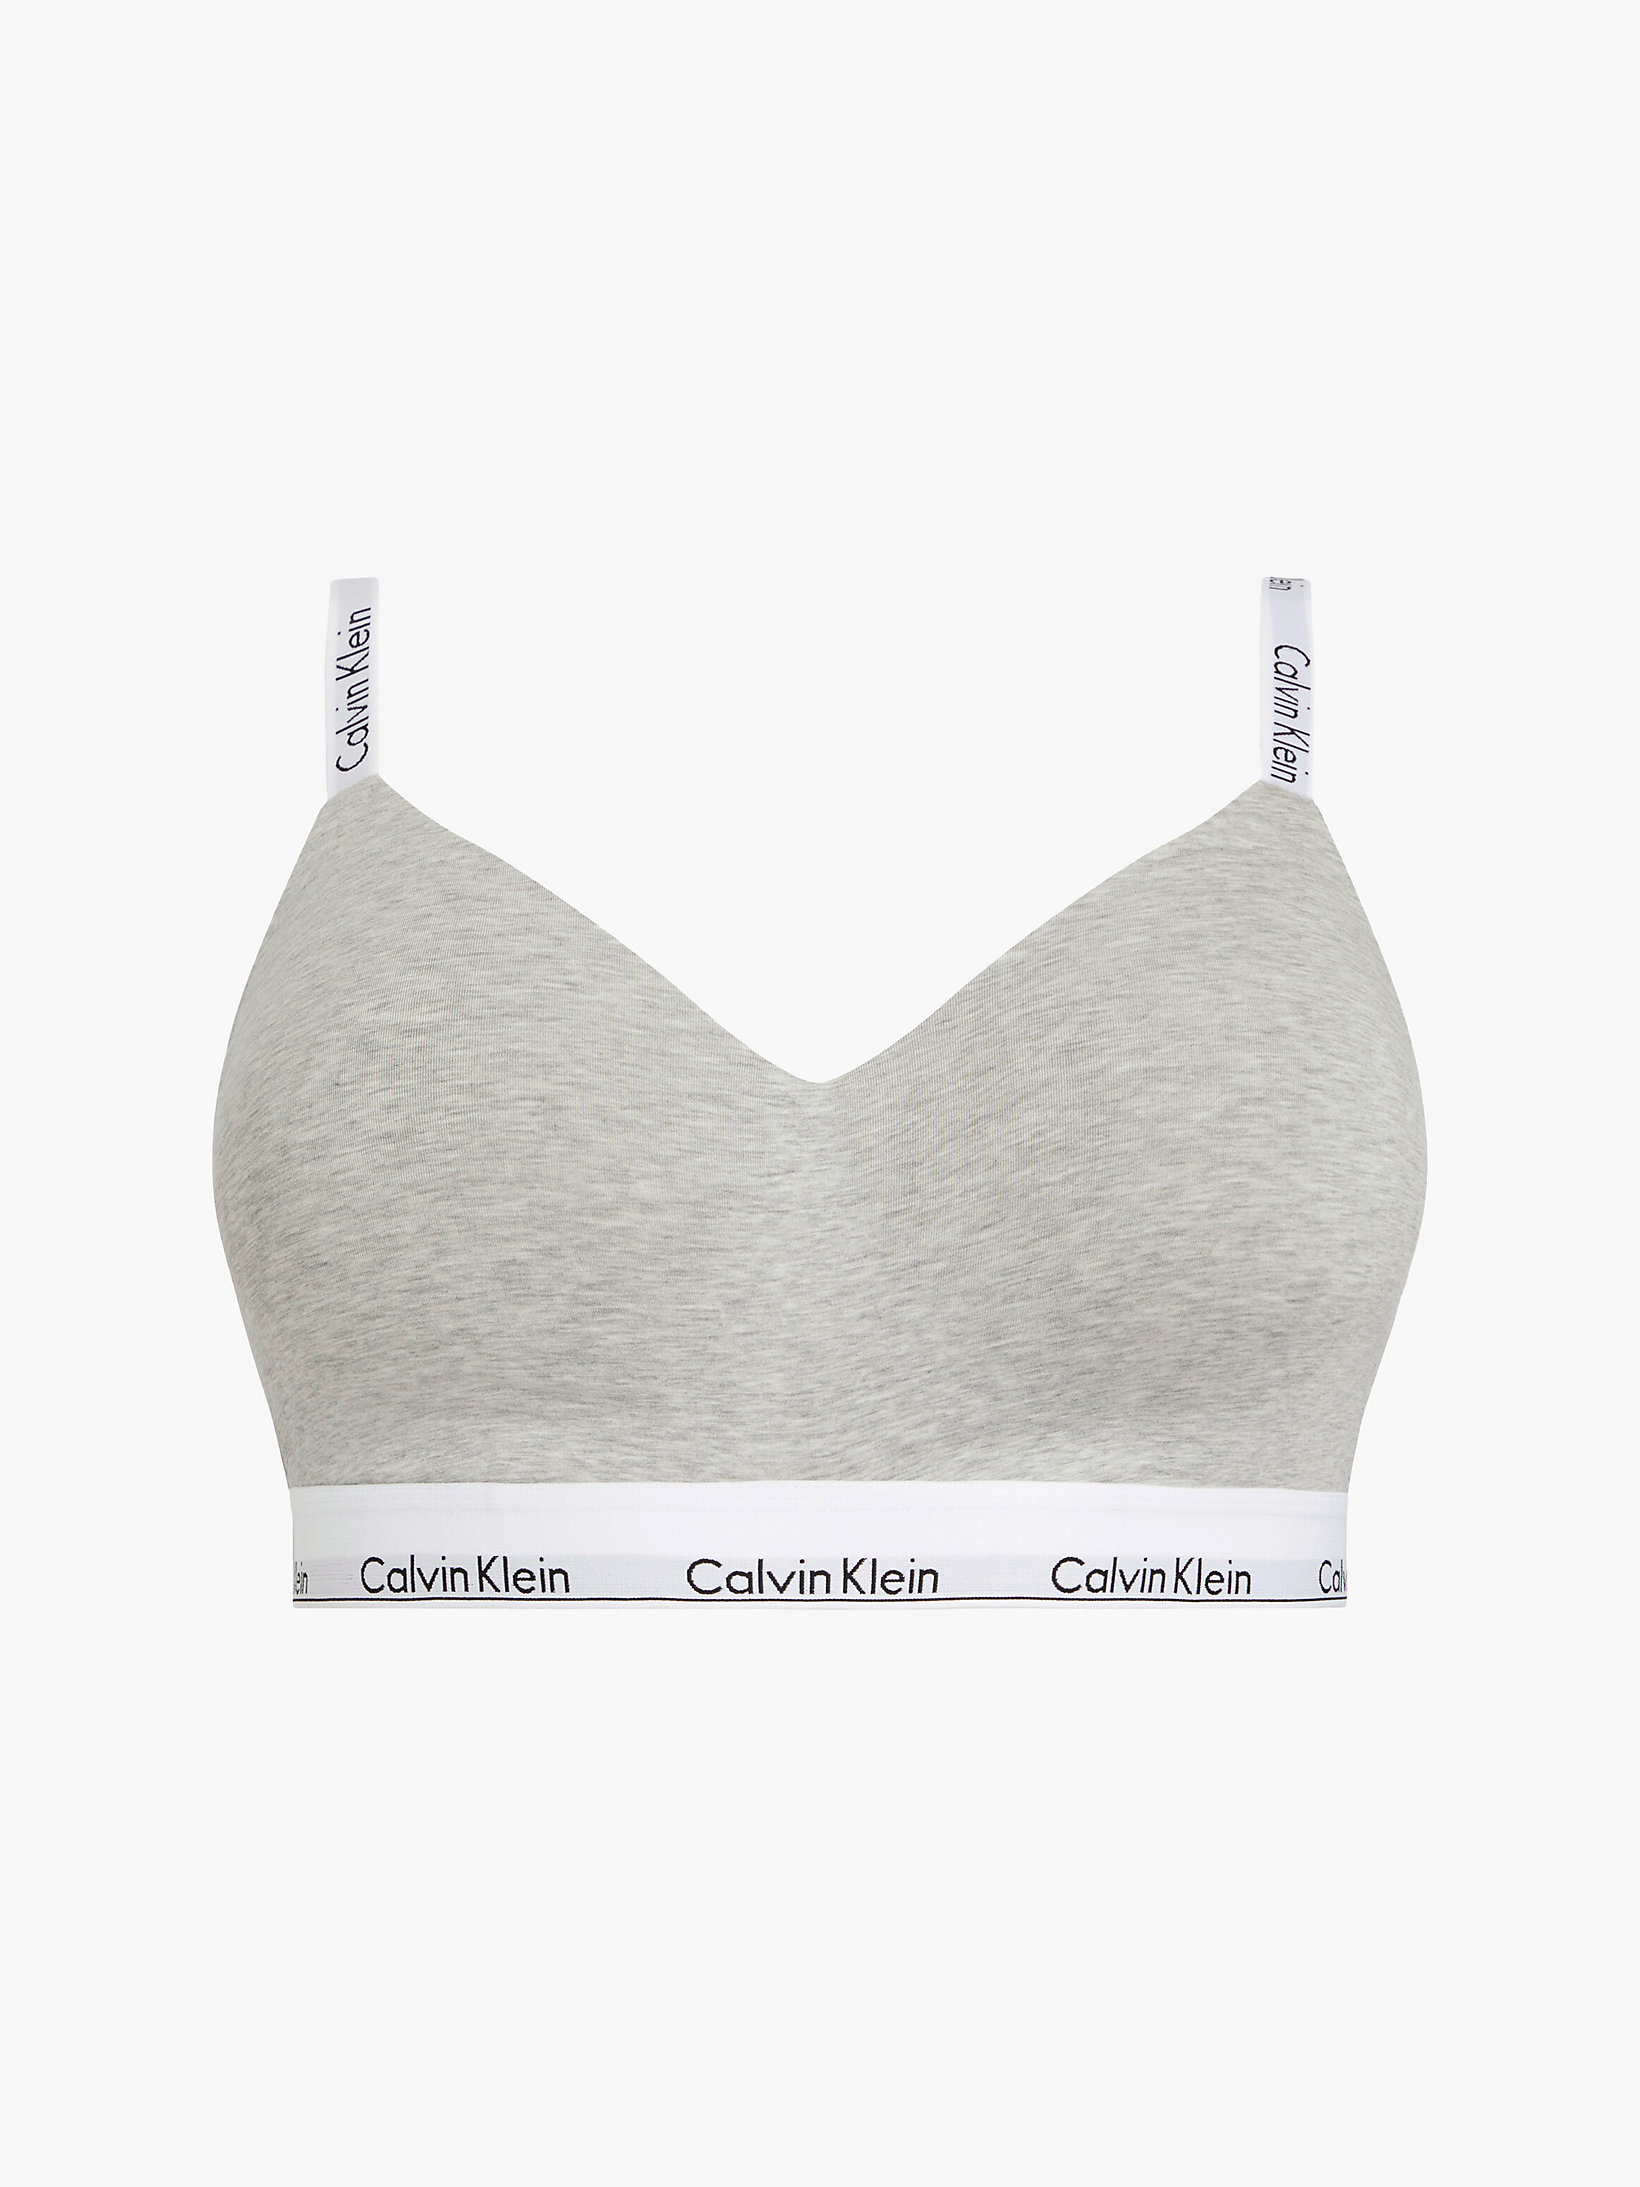 Grey Heather Plus Size Bralette - Modern Cotton undefined women Calvin Klein